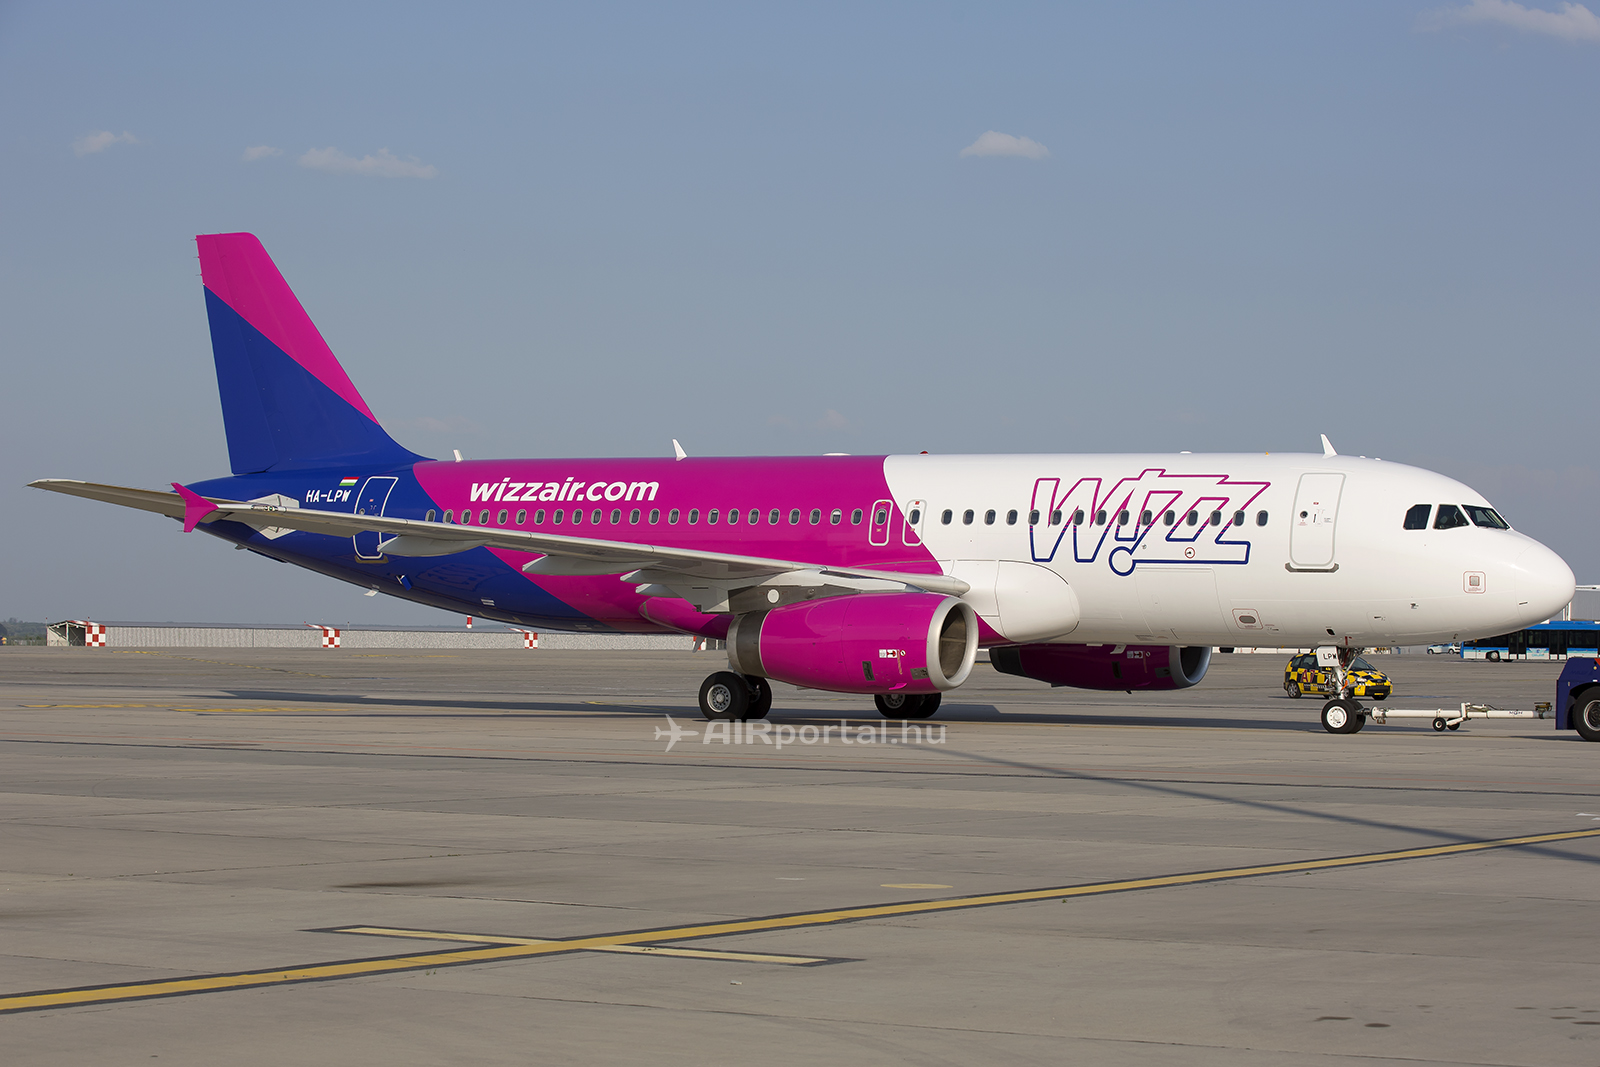 A Wizz Air új arculat szerint átfestett repülőgépe Ferihegyen. (Fotó: AIRportal.hu) | © AIRportal.hu